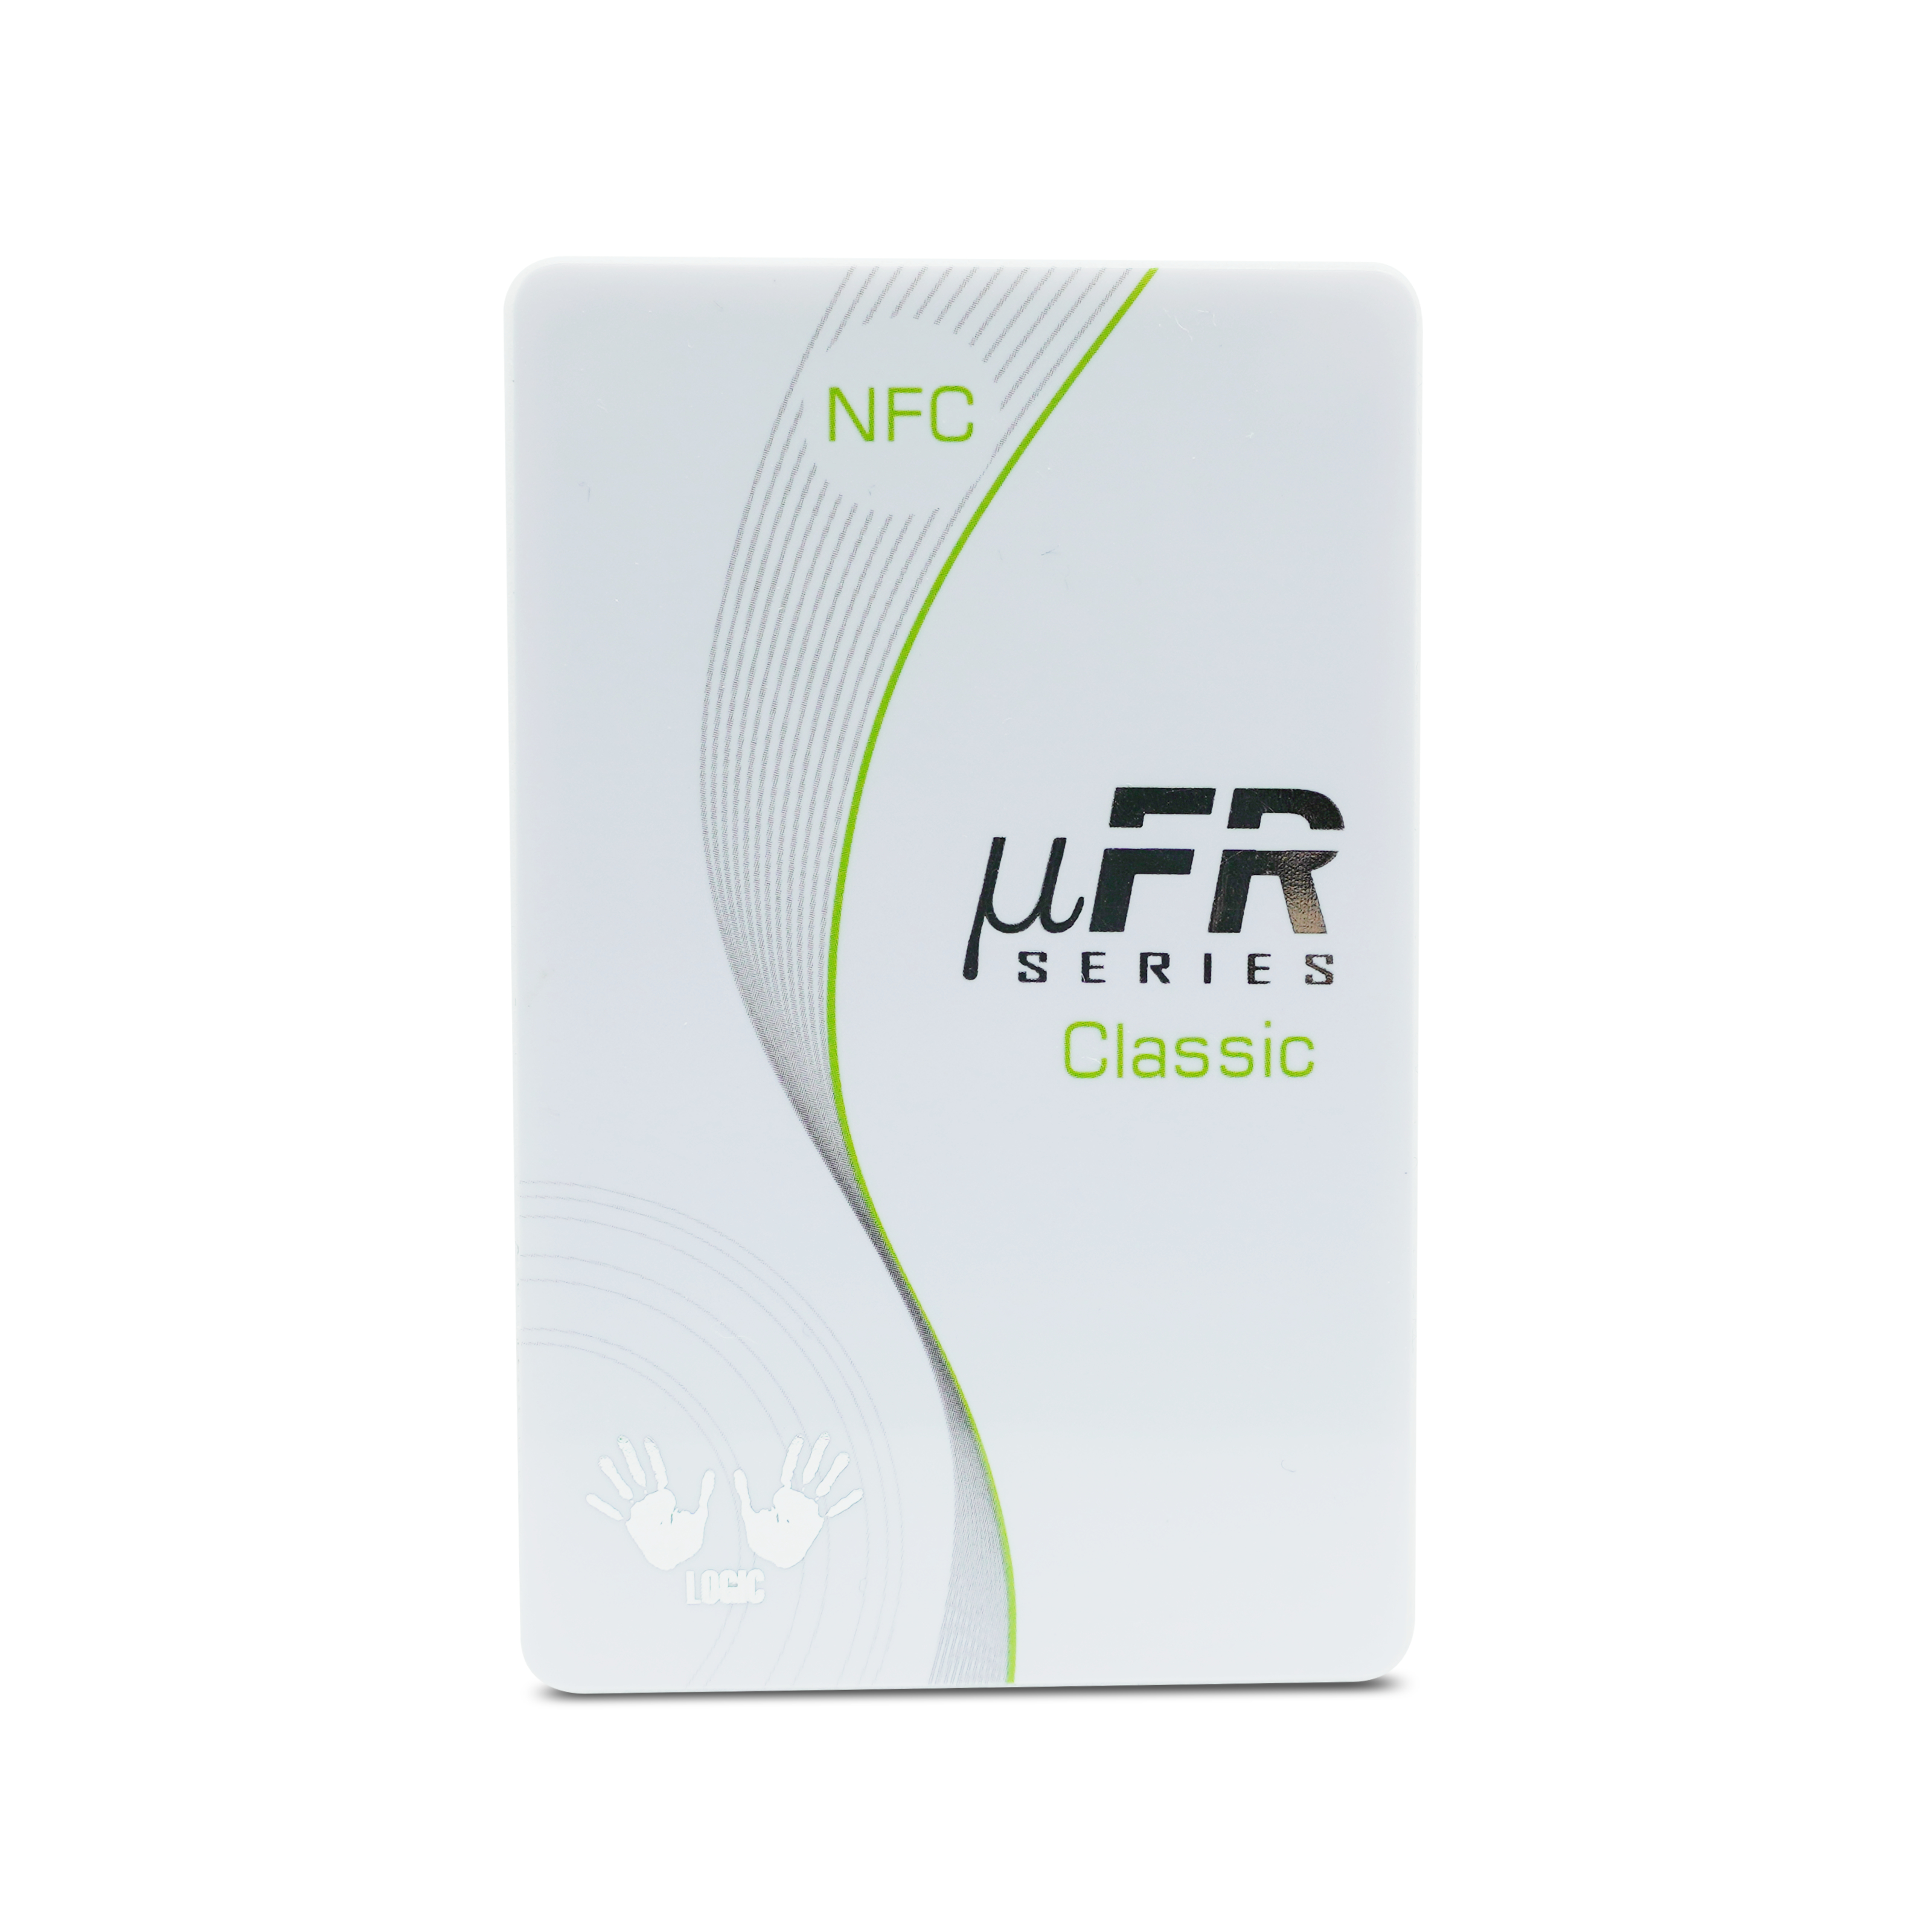 Vorderseite des NFC Reader/Writer in weiß 